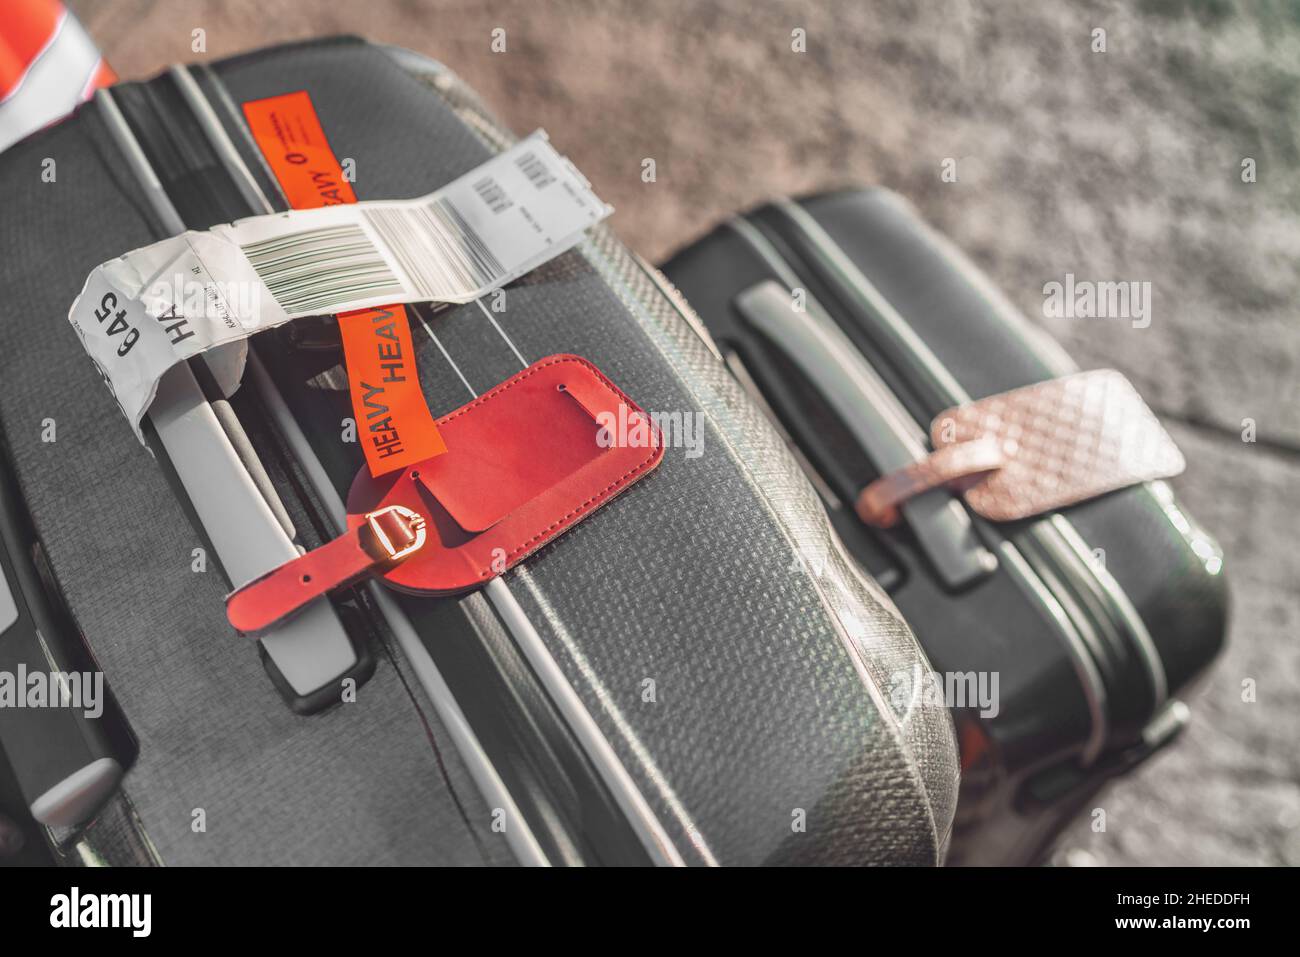 Maleta mochila equipaje de mano: el concepto definitivo • Viaja en blog